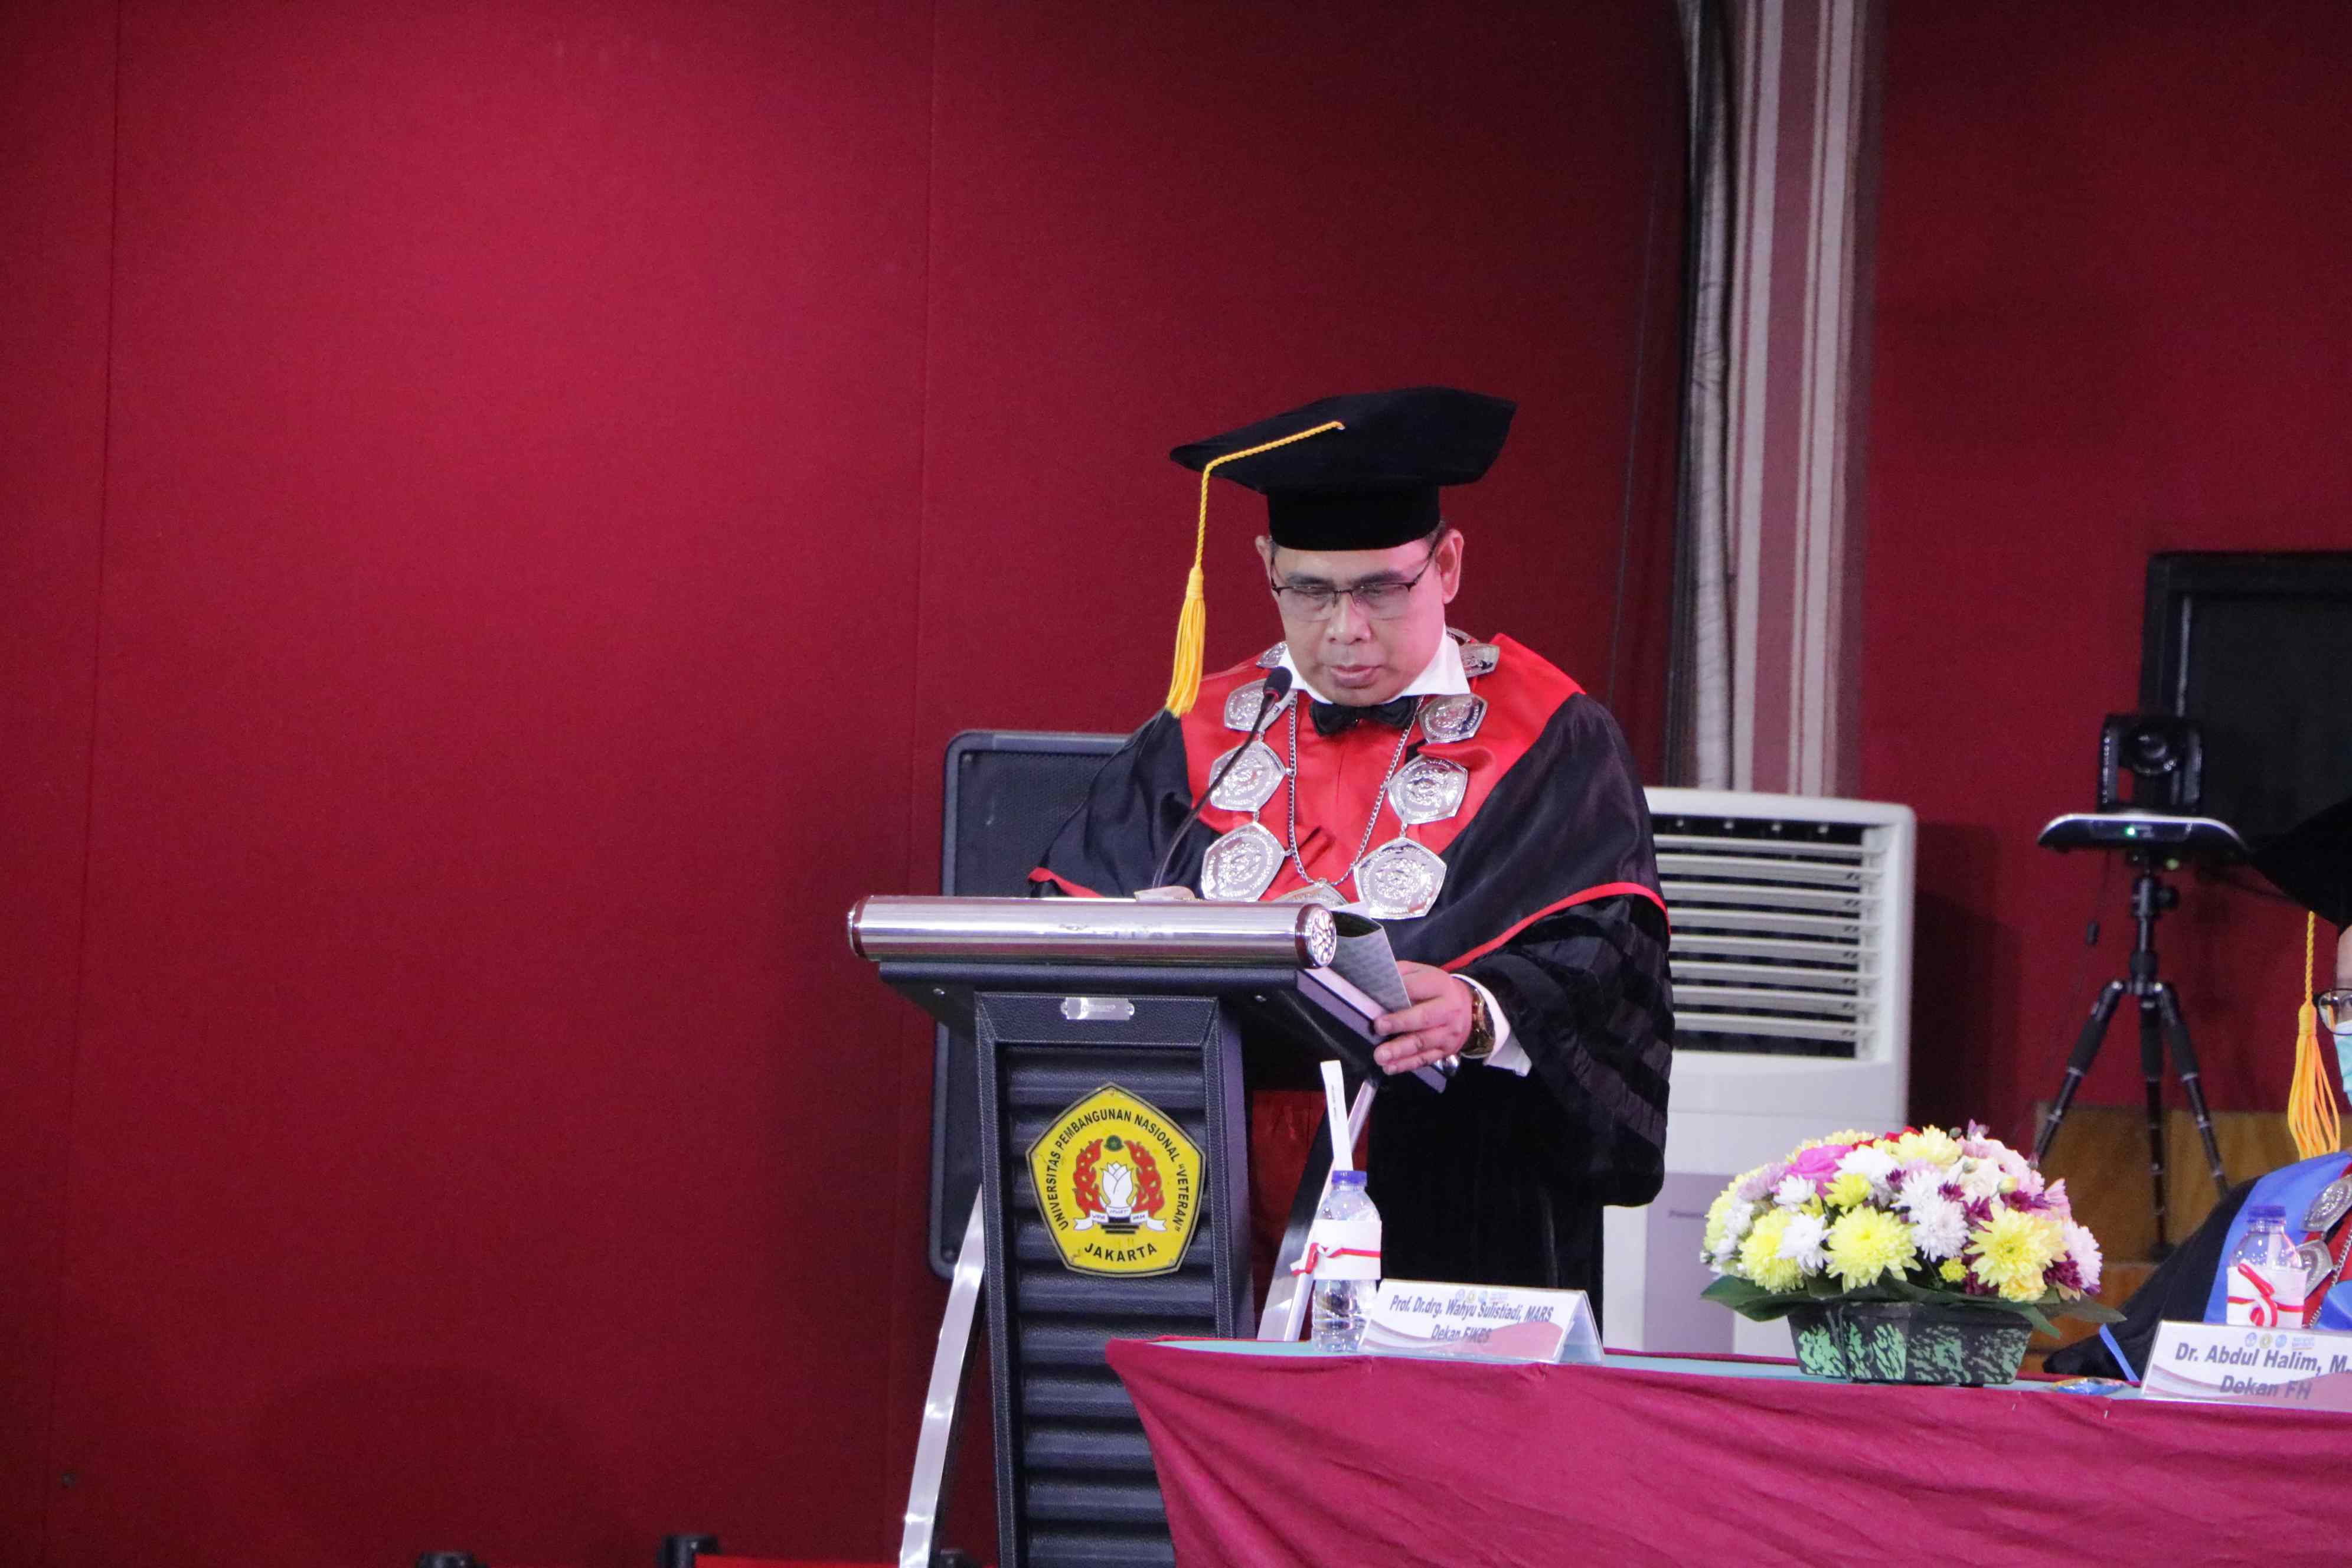 Pengukuhan Prof Dr Wicipto Setiadi SH MH Guru Besar bidang Ilmu Hukum Fakultas Hukum Universitas Pembangunan Nasional Veteran Jakarta (297)